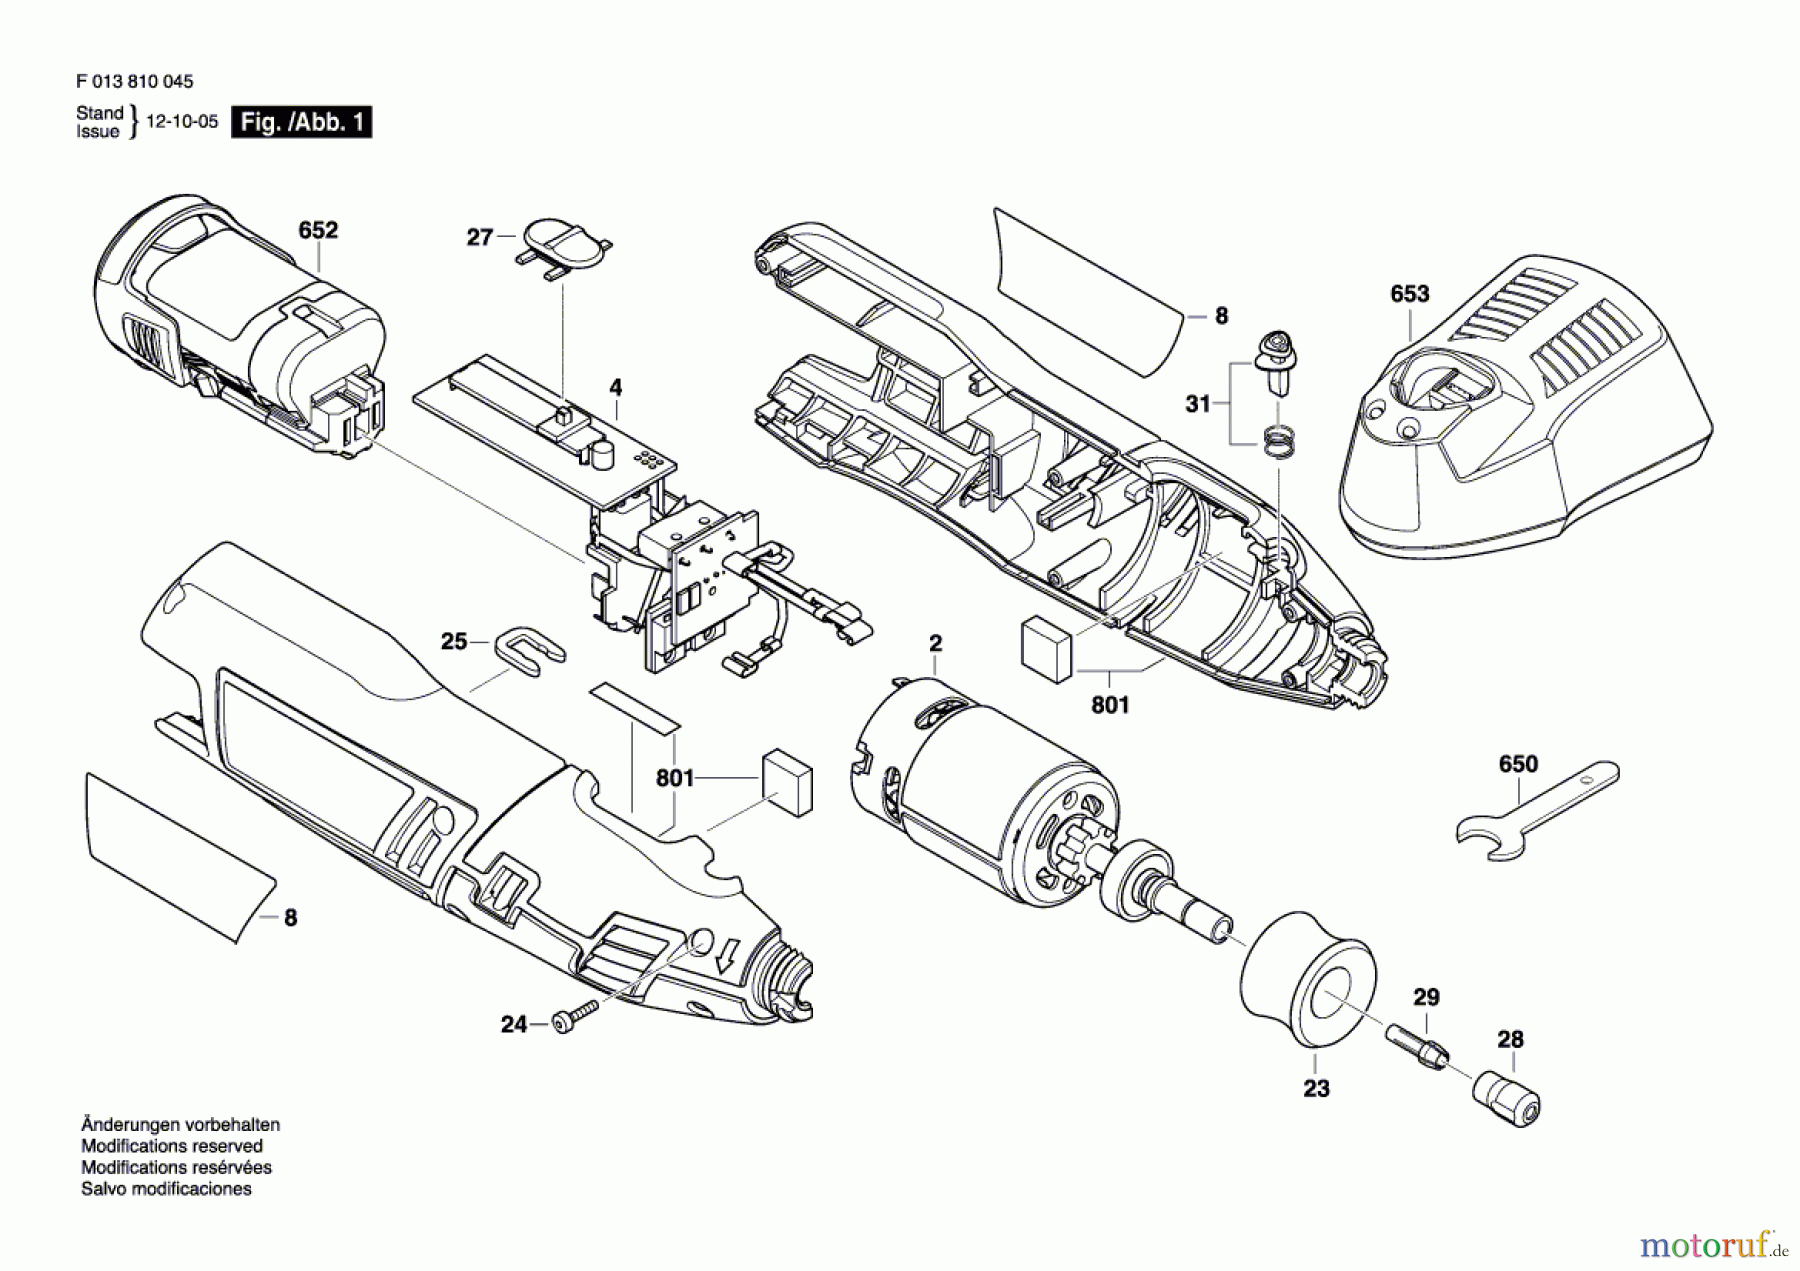  Bosch Werkzeug Drehwerkzeug 8100 Seite 1